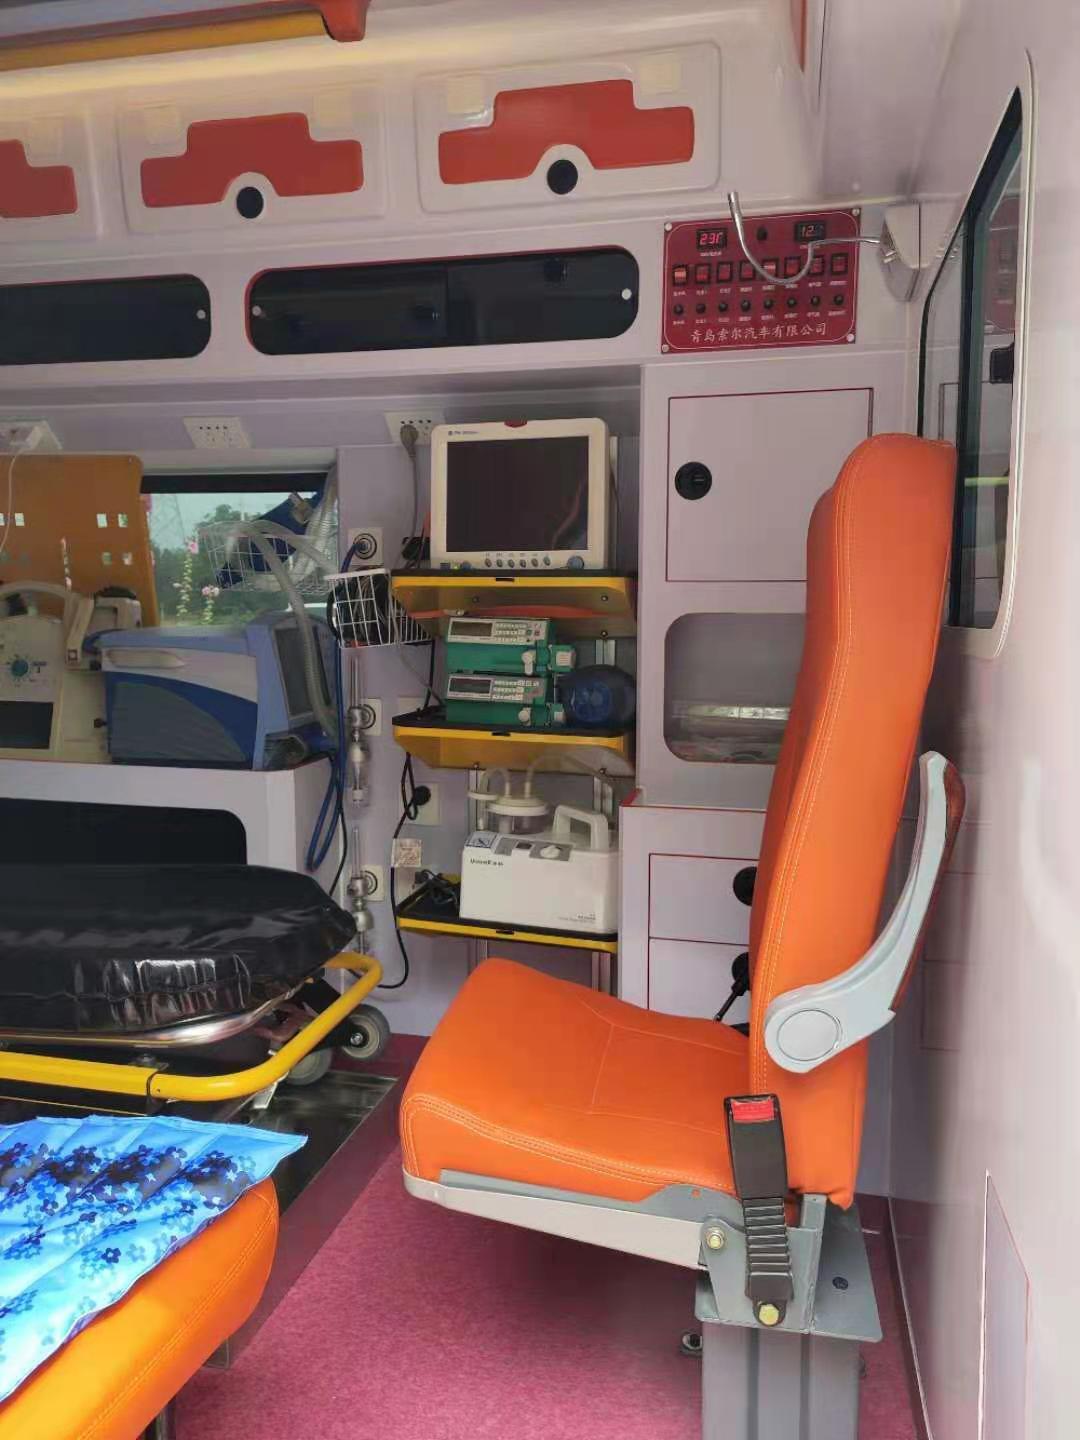 石景山301私人120救护车出租先服务后收费